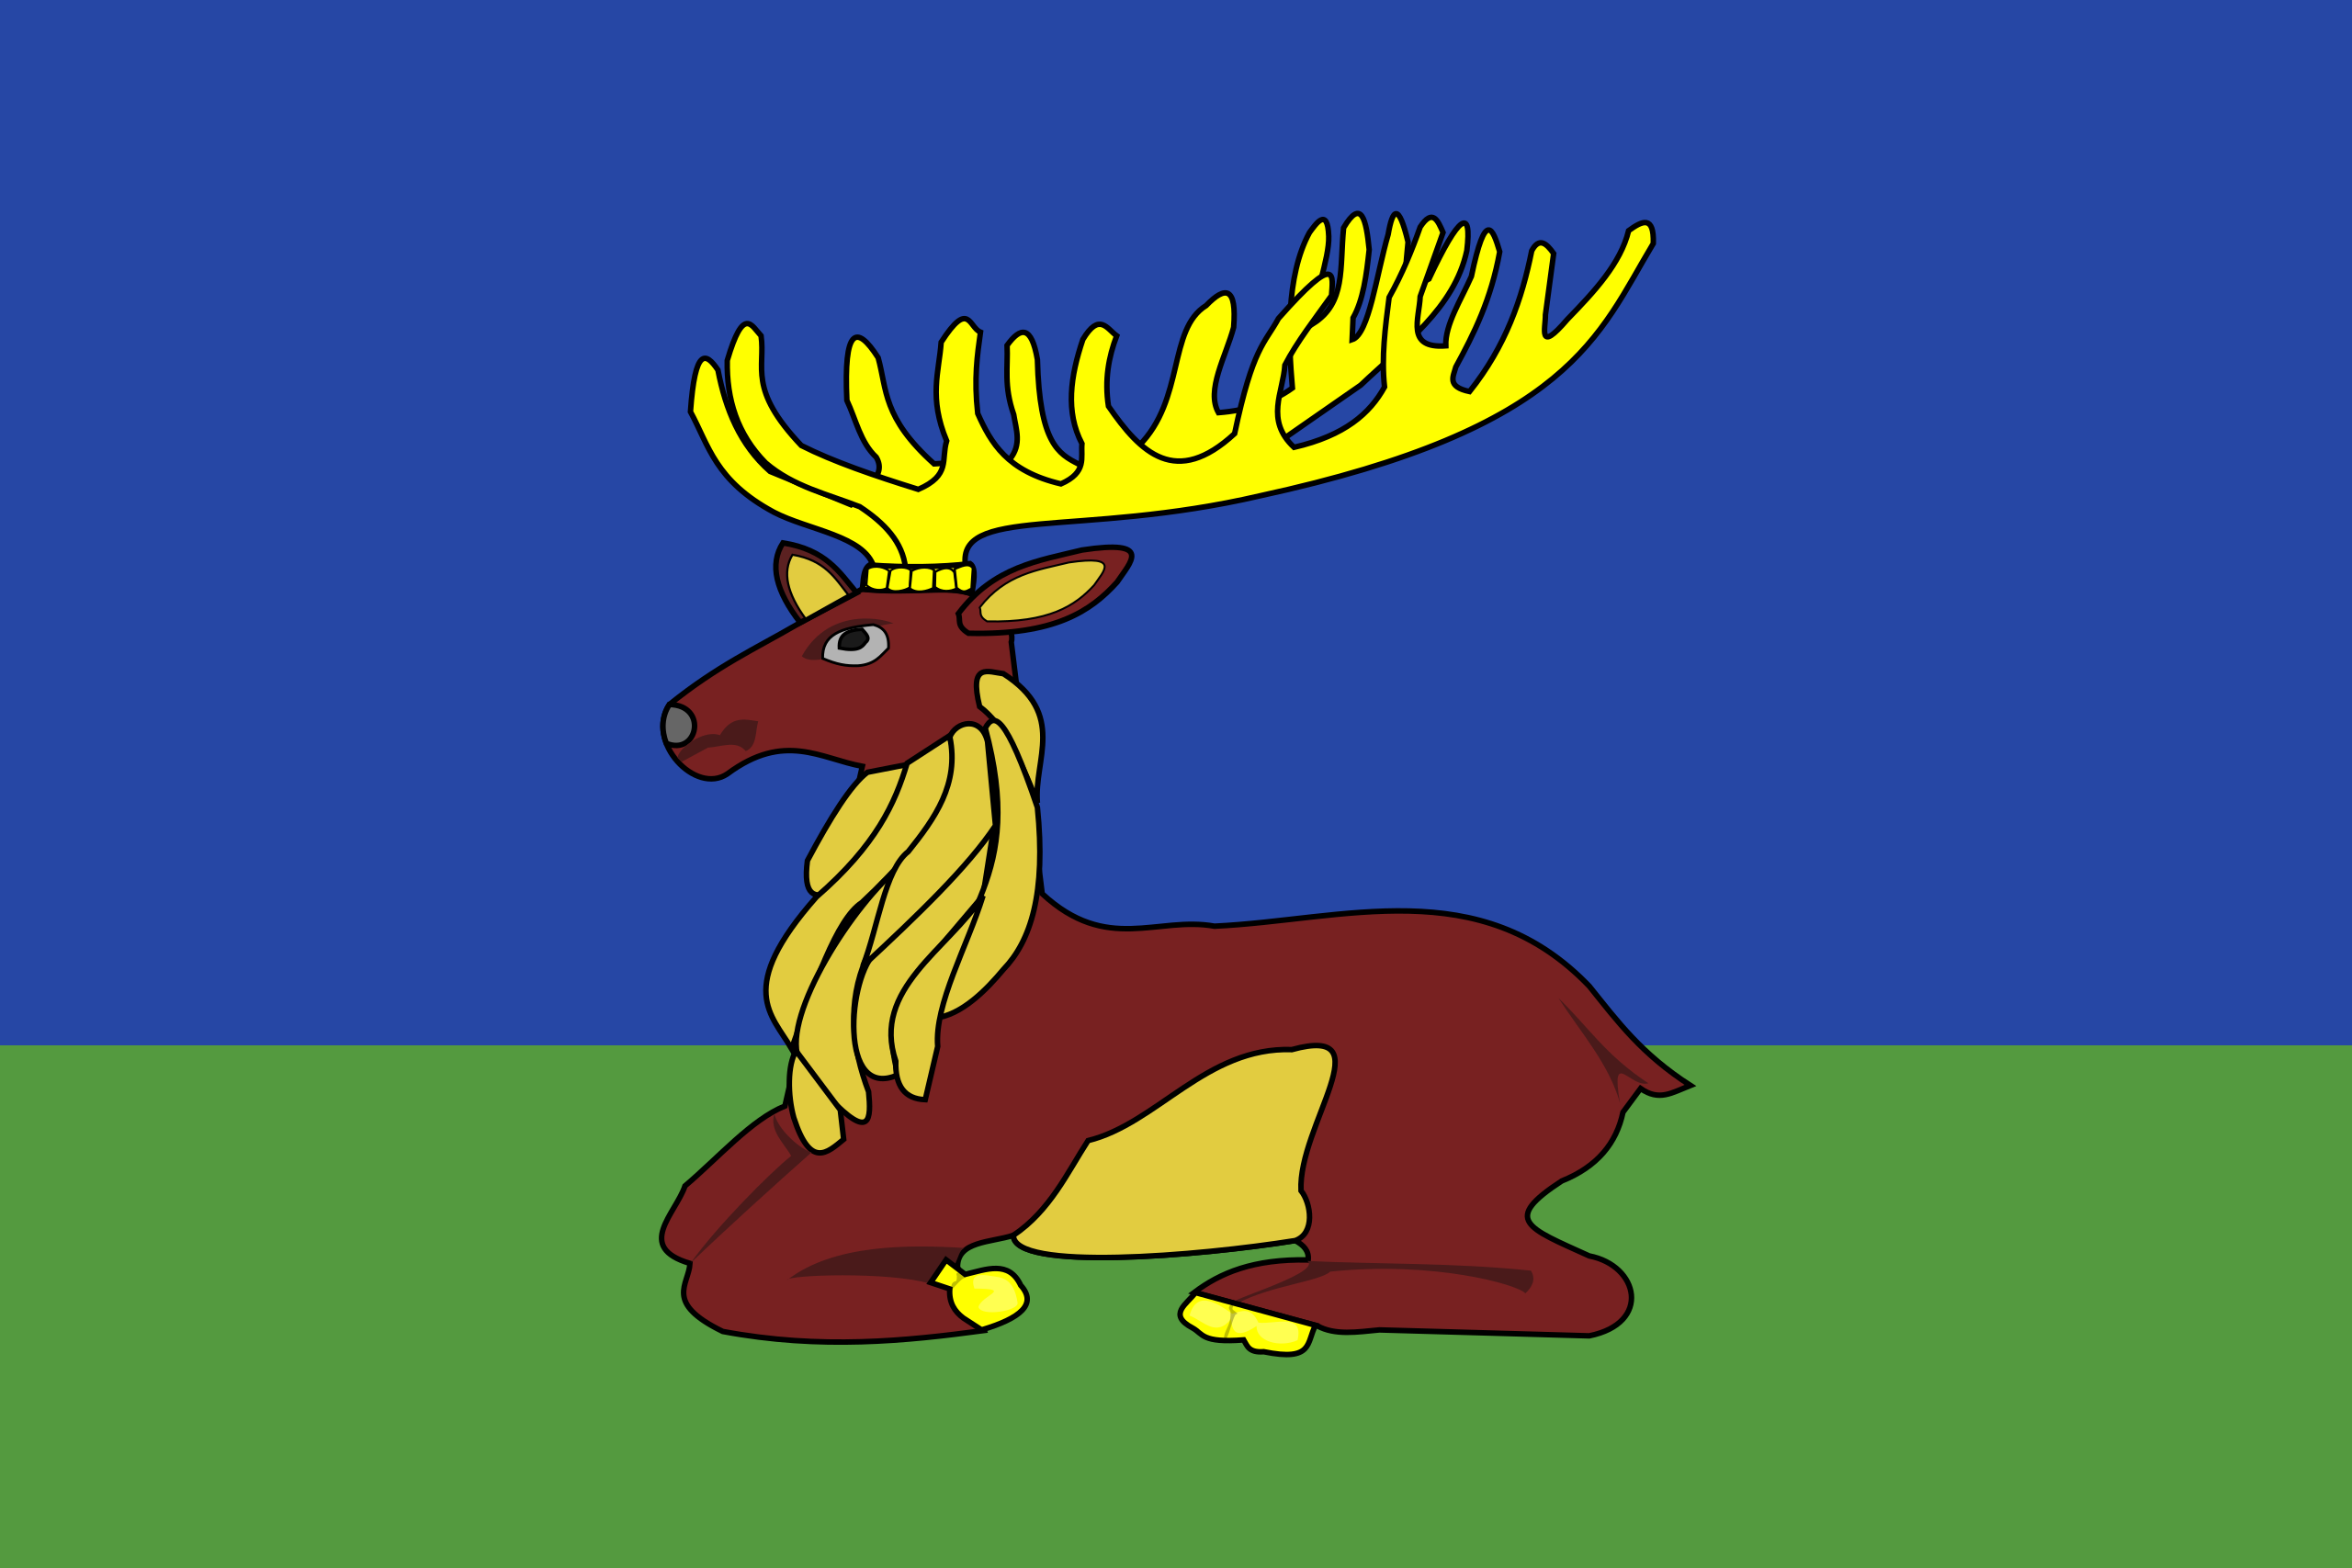 Obrázek vlajky města Jaroměřice Nad Rokytnou v rozlišení 2560x1707 Kraj Vysočina Jaroměřická vlajka 